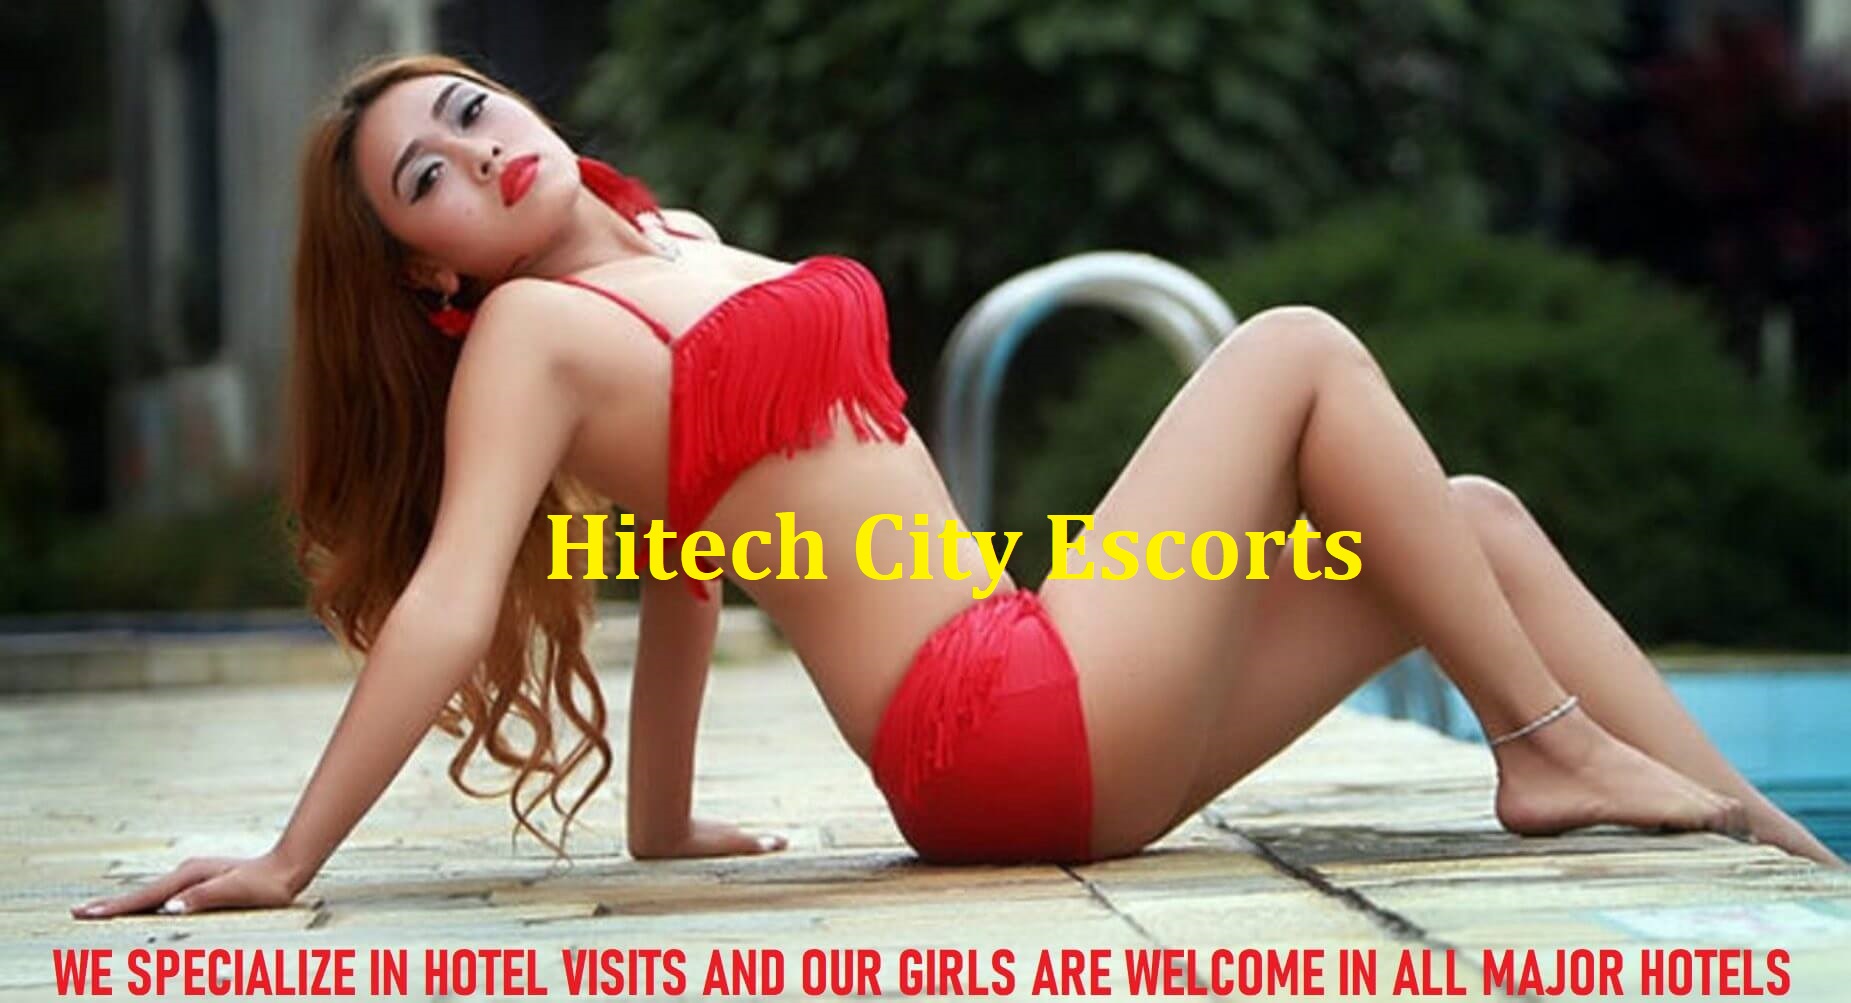 hitech city escorts